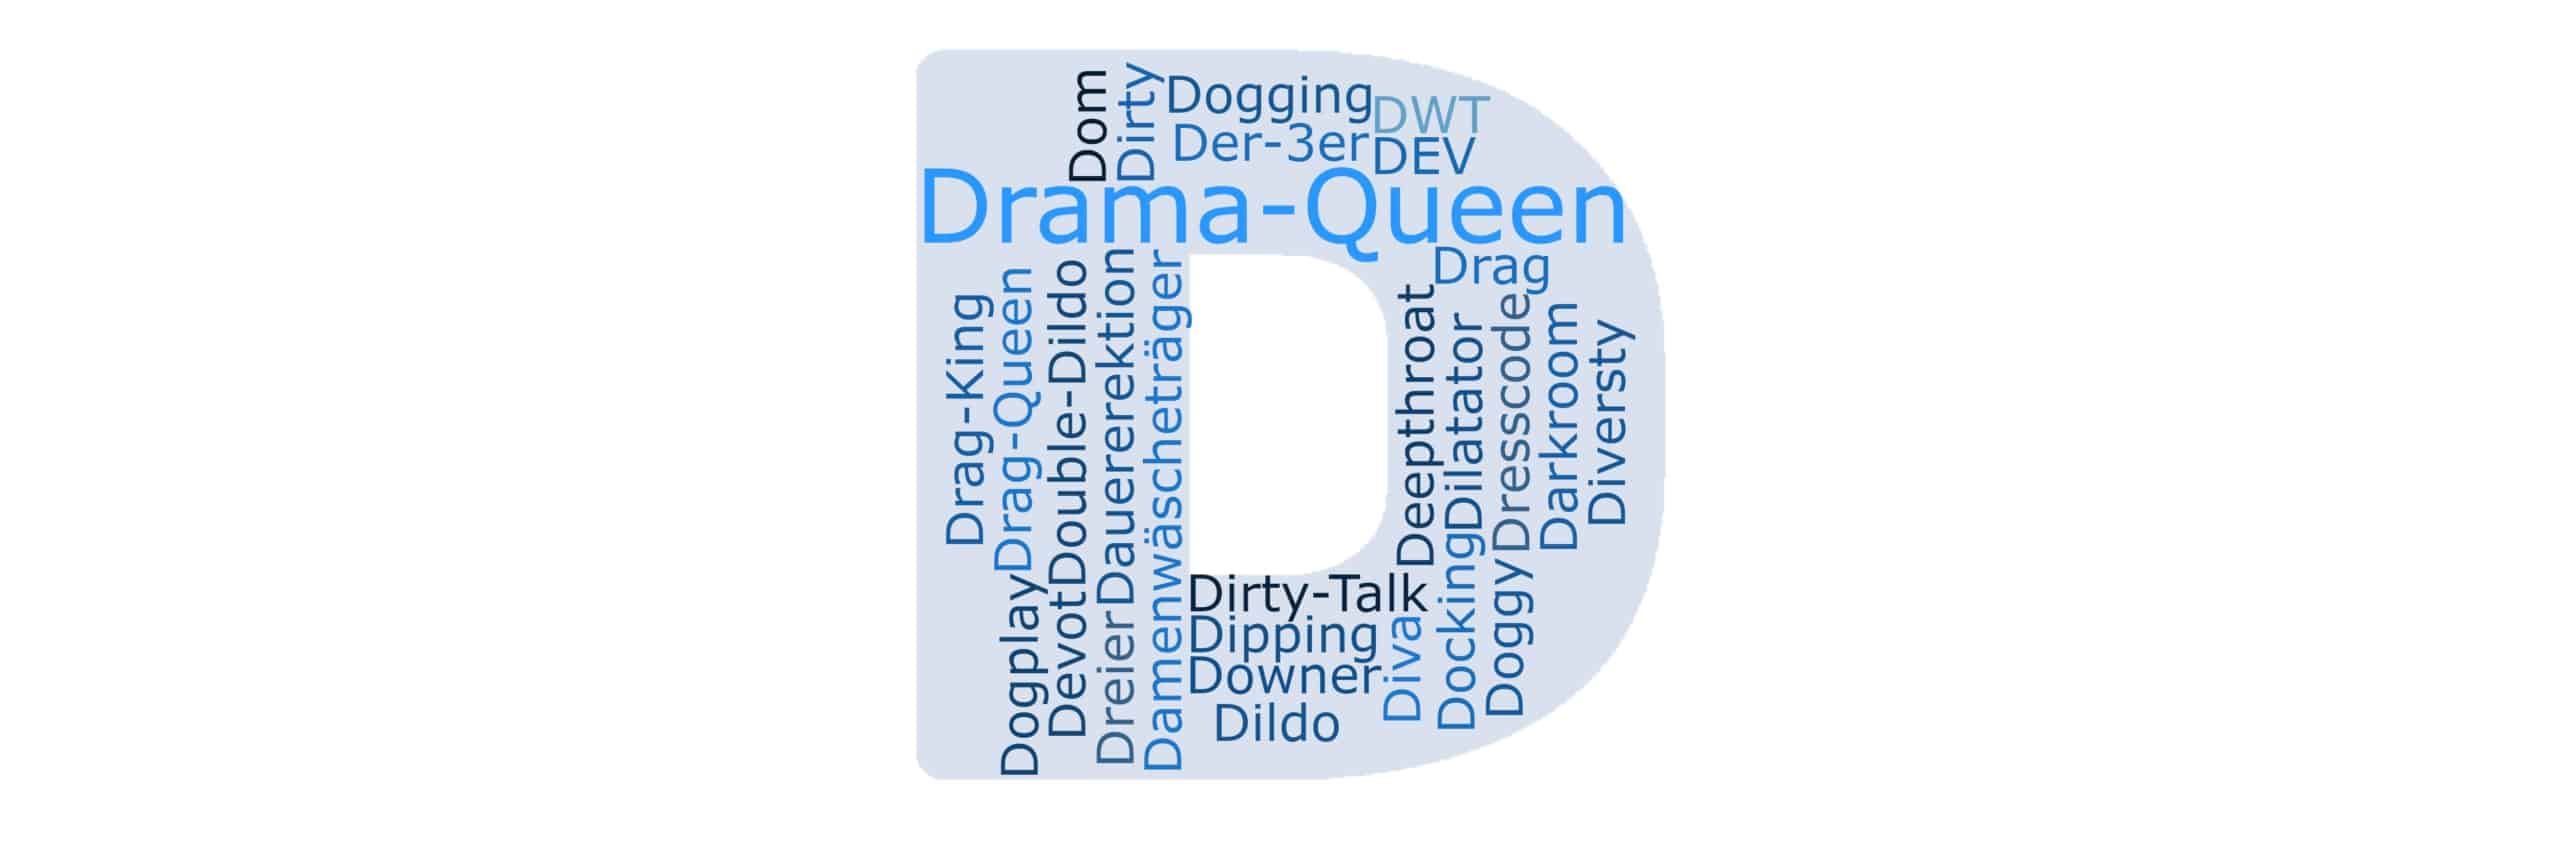 Reina del drama